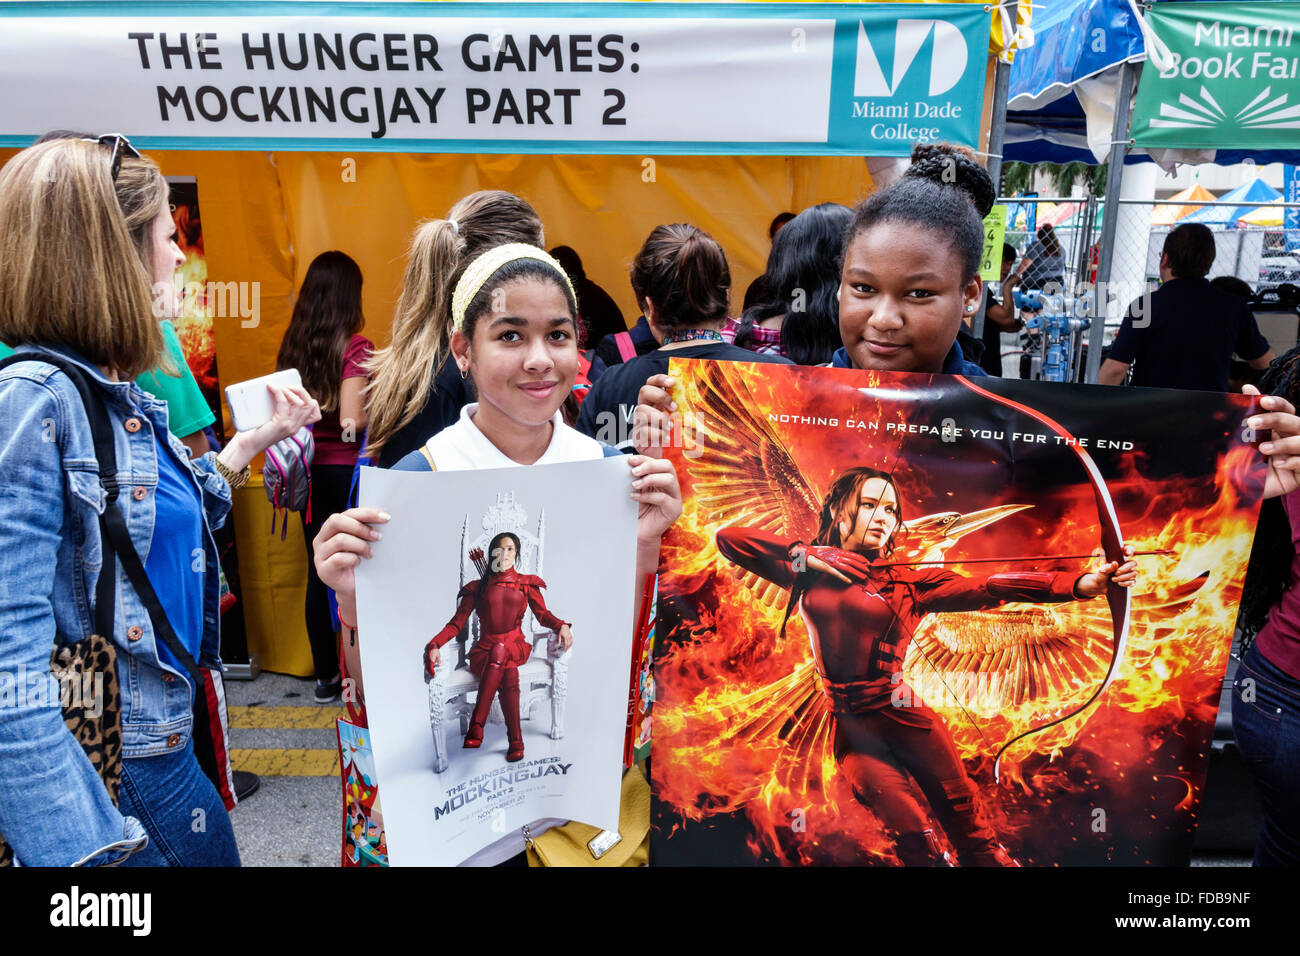 Miami Florida,Book Fair International,Miami Dade College campus,littéraire,festival,annuel Hunger Games Mockingjay partie 2,cadeau d'affiche gratuit,étudiant s Banque D'Images